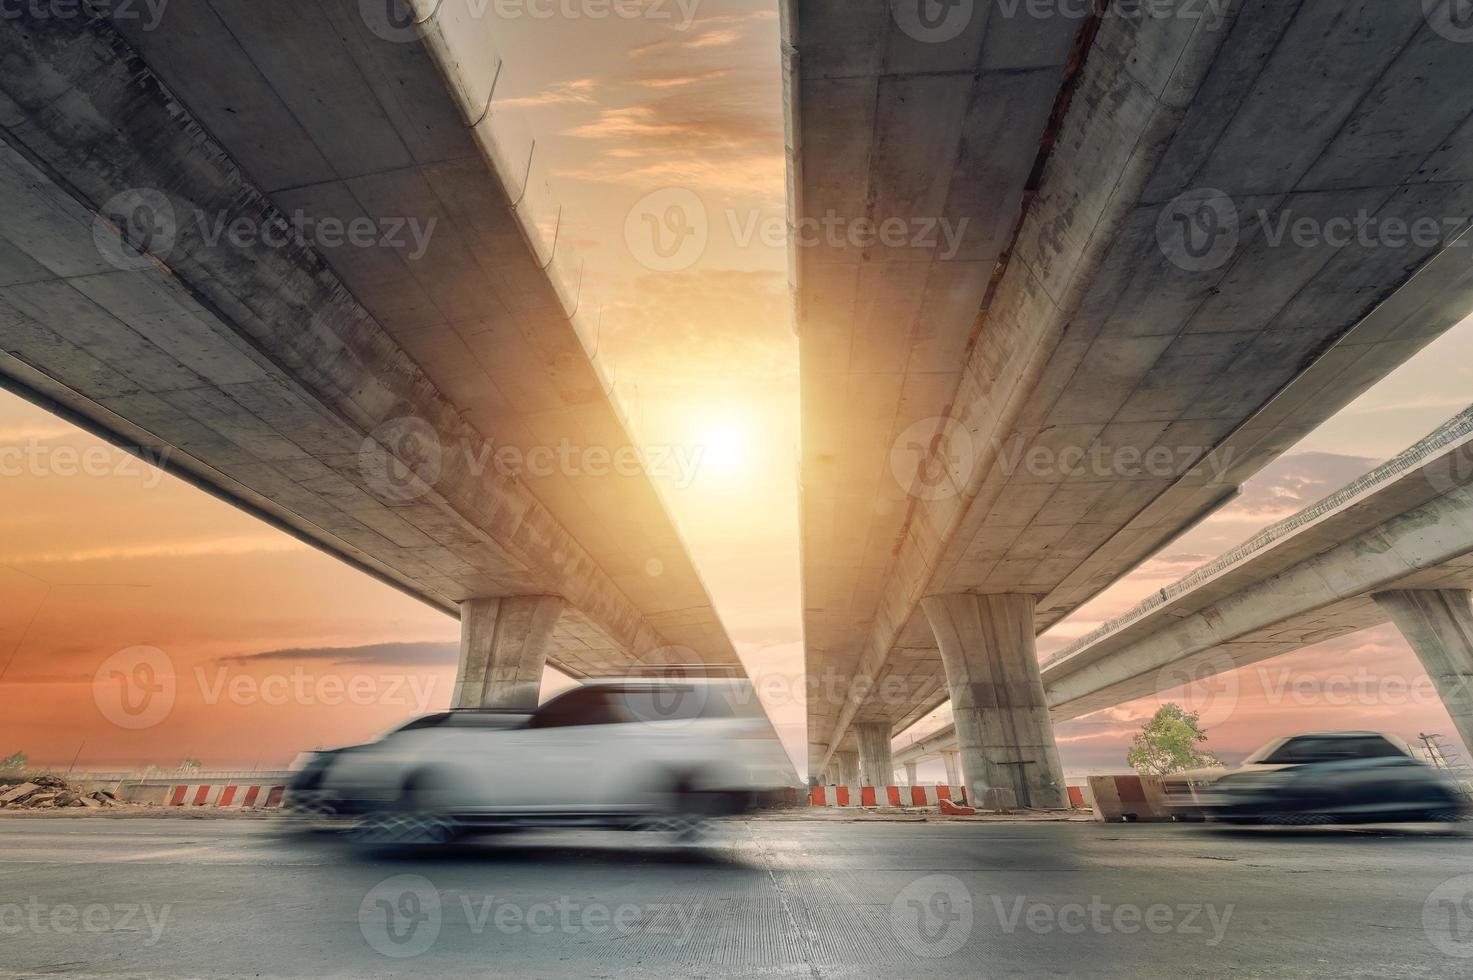 konstruktion av asfalt motorvägar och överfarter i Asien, se av väg korsning mot de himmel foto